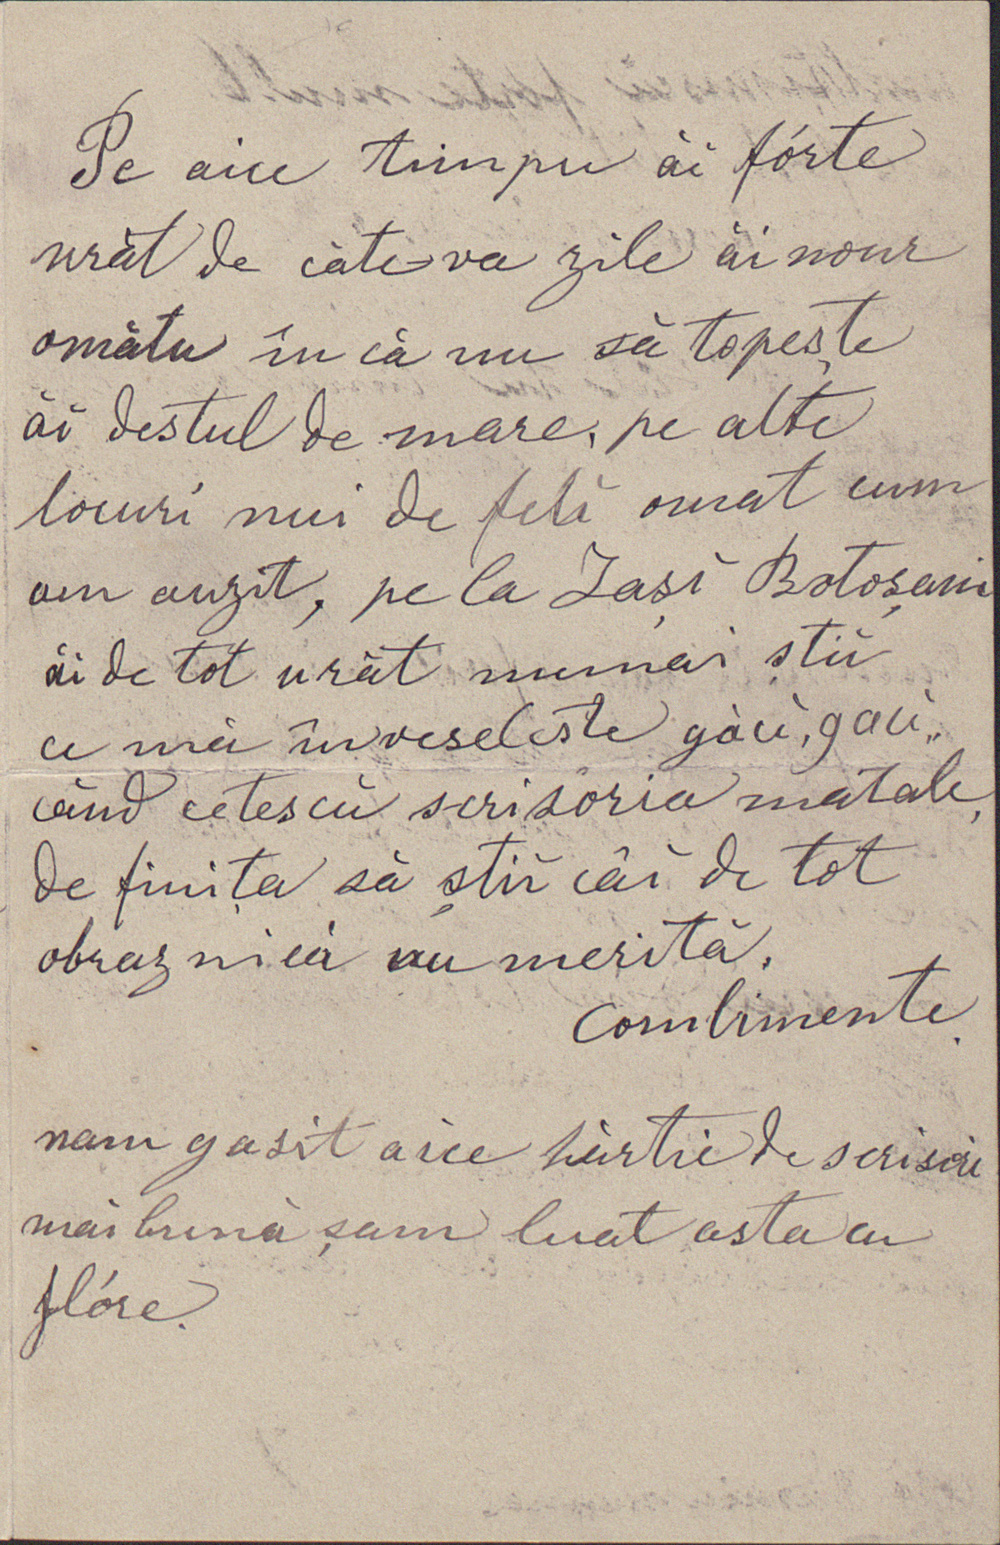 Foto III c -  Scrisoarea Mariei Enescu către fiul său  George (22.01.1895)